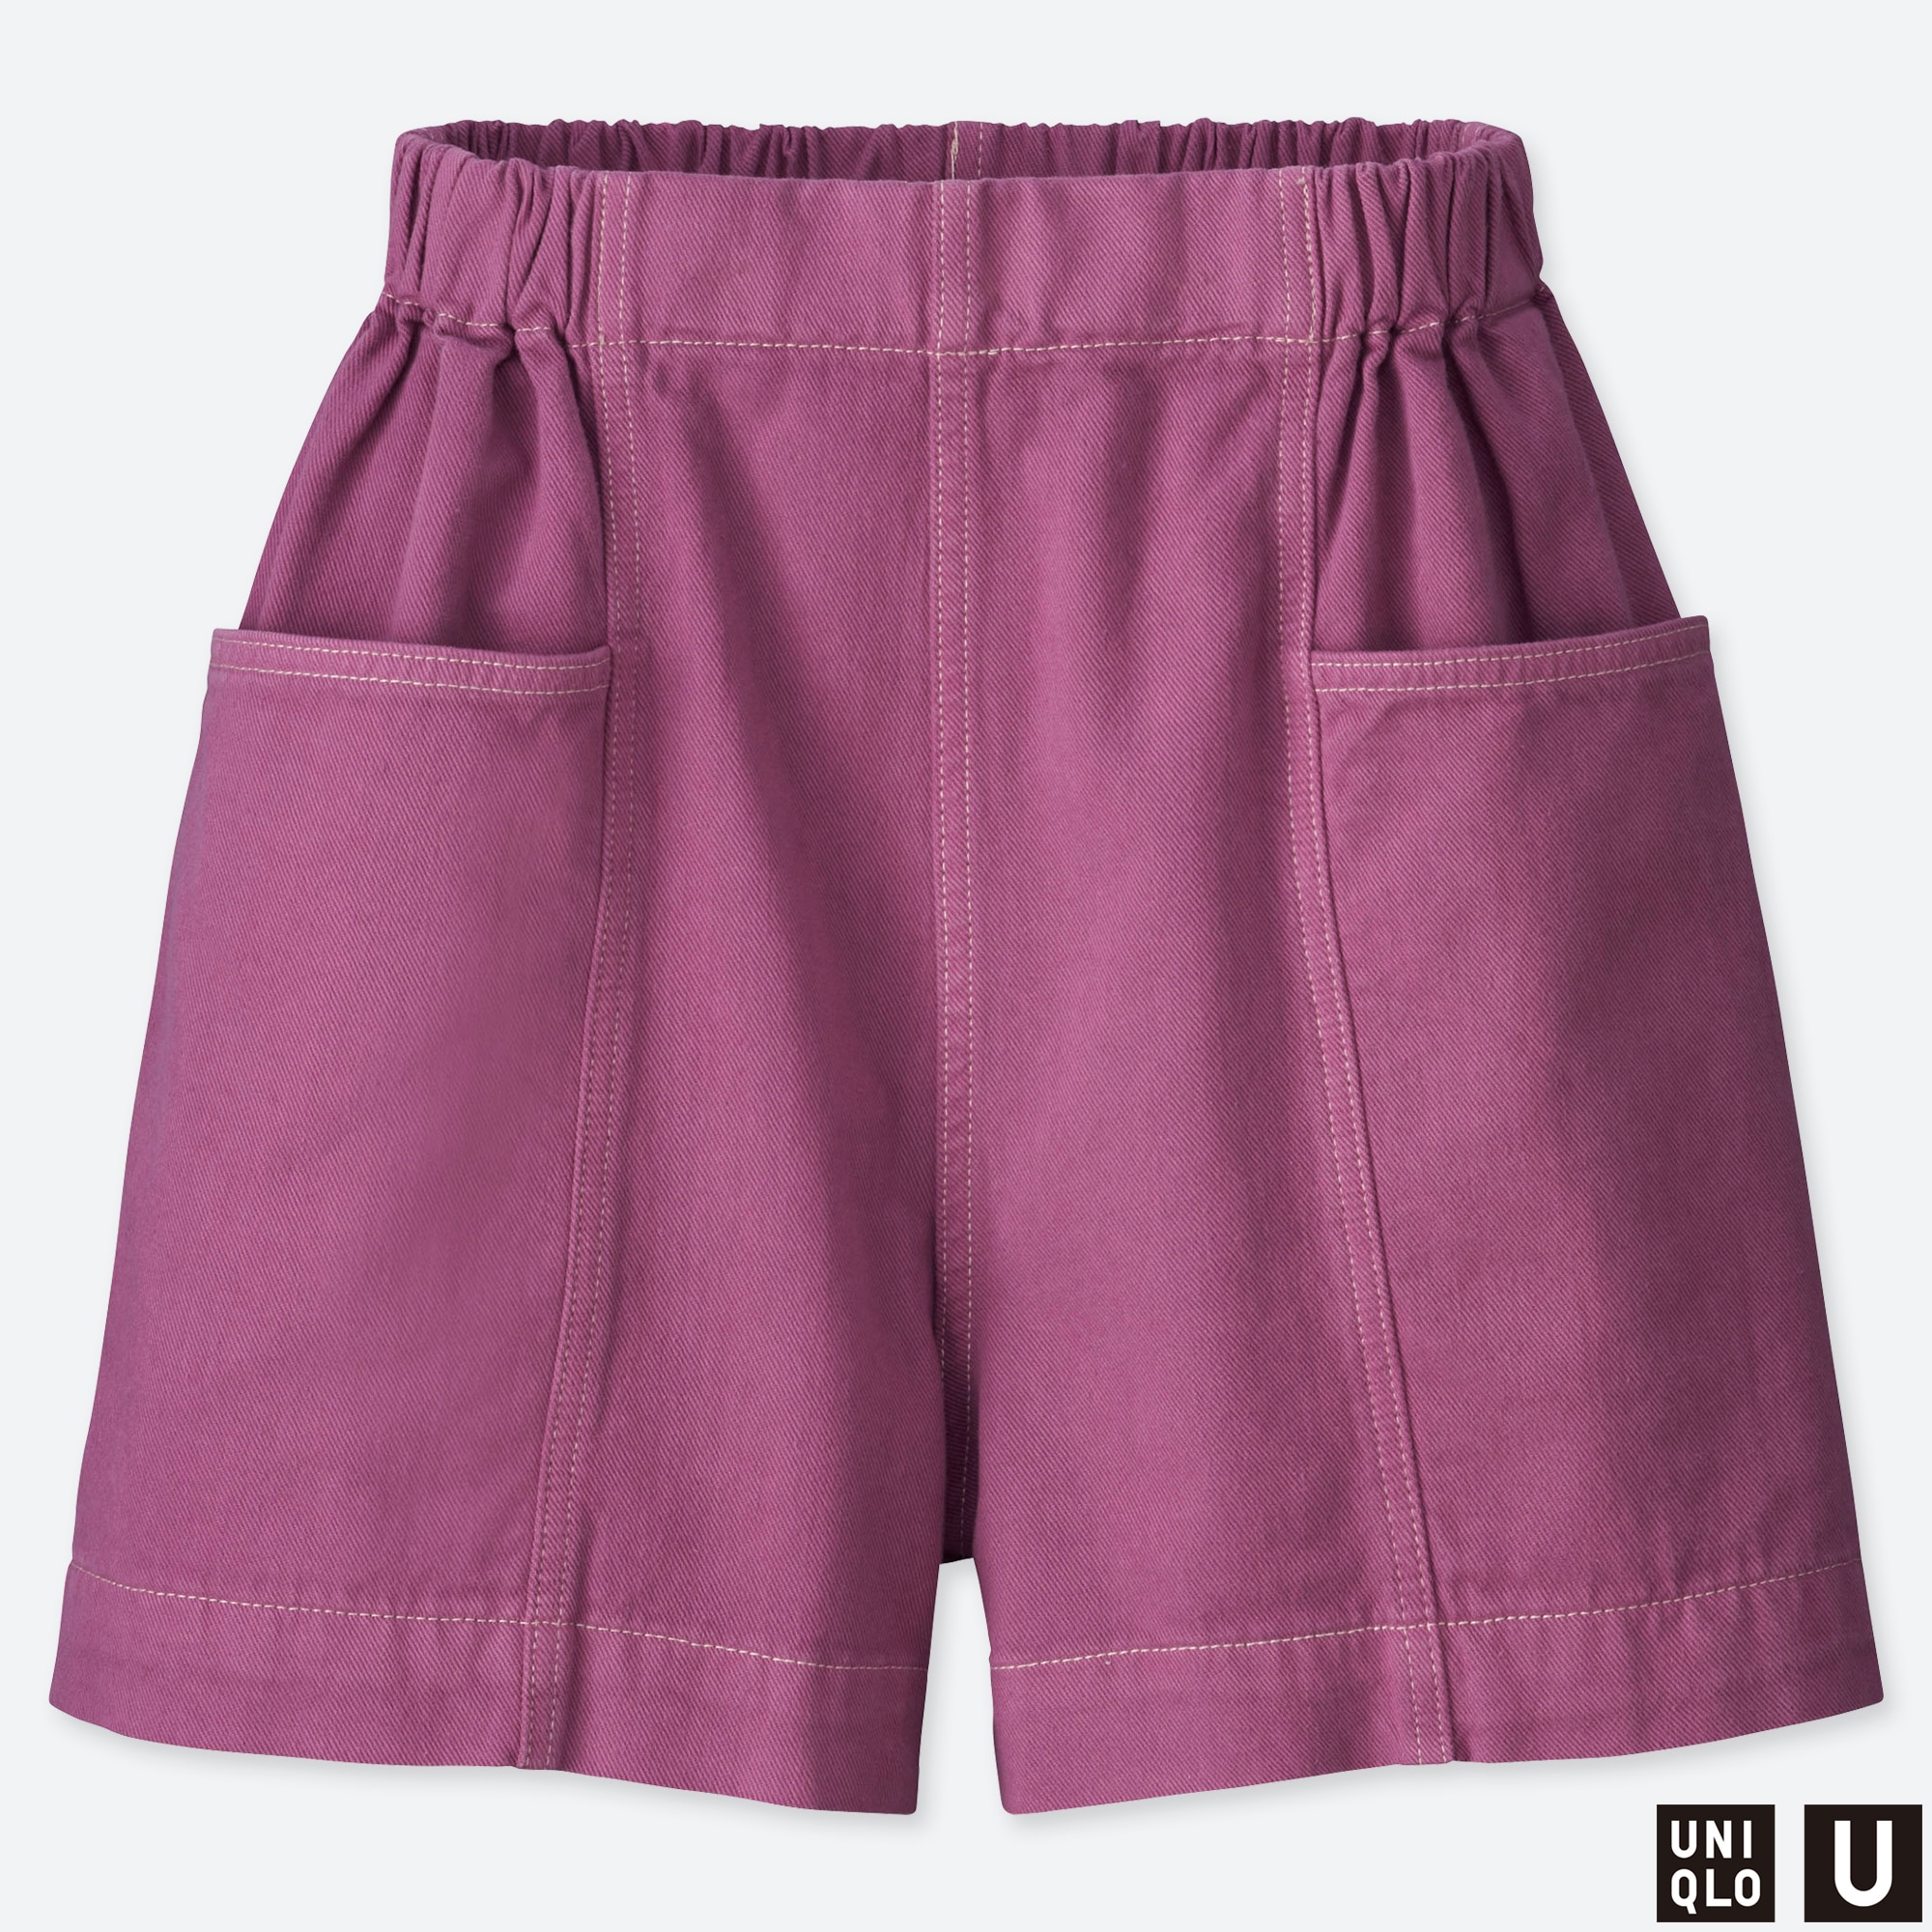 purple denim shorts